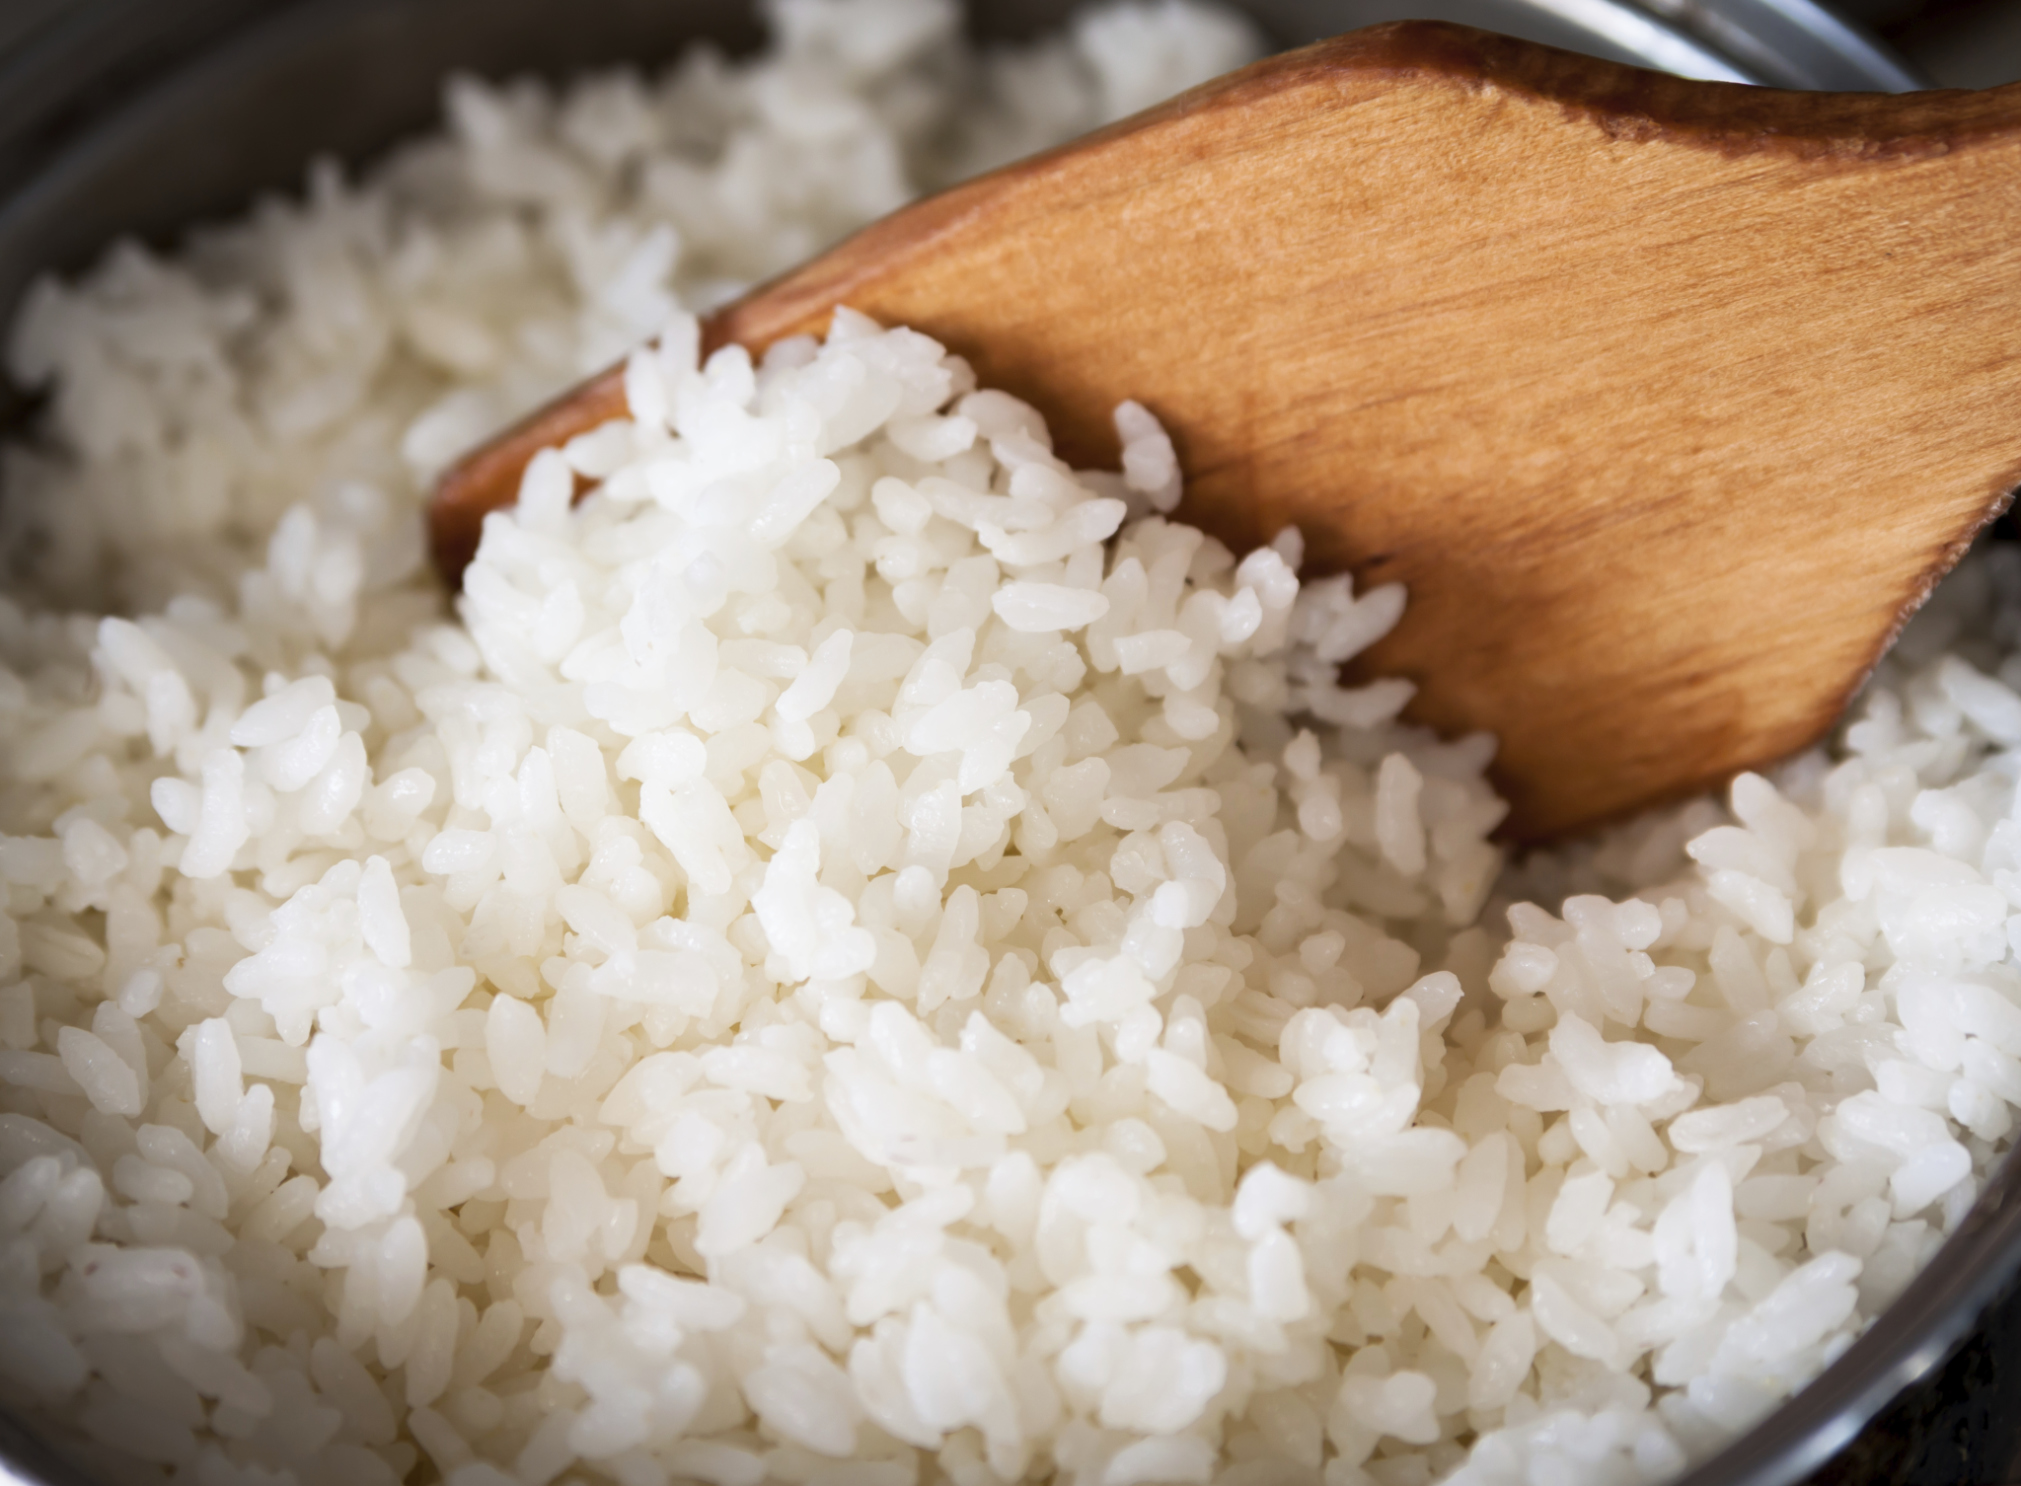 Umělá rýže se objevila na prodejních pultech v Číně. Chutná jako spálený plast